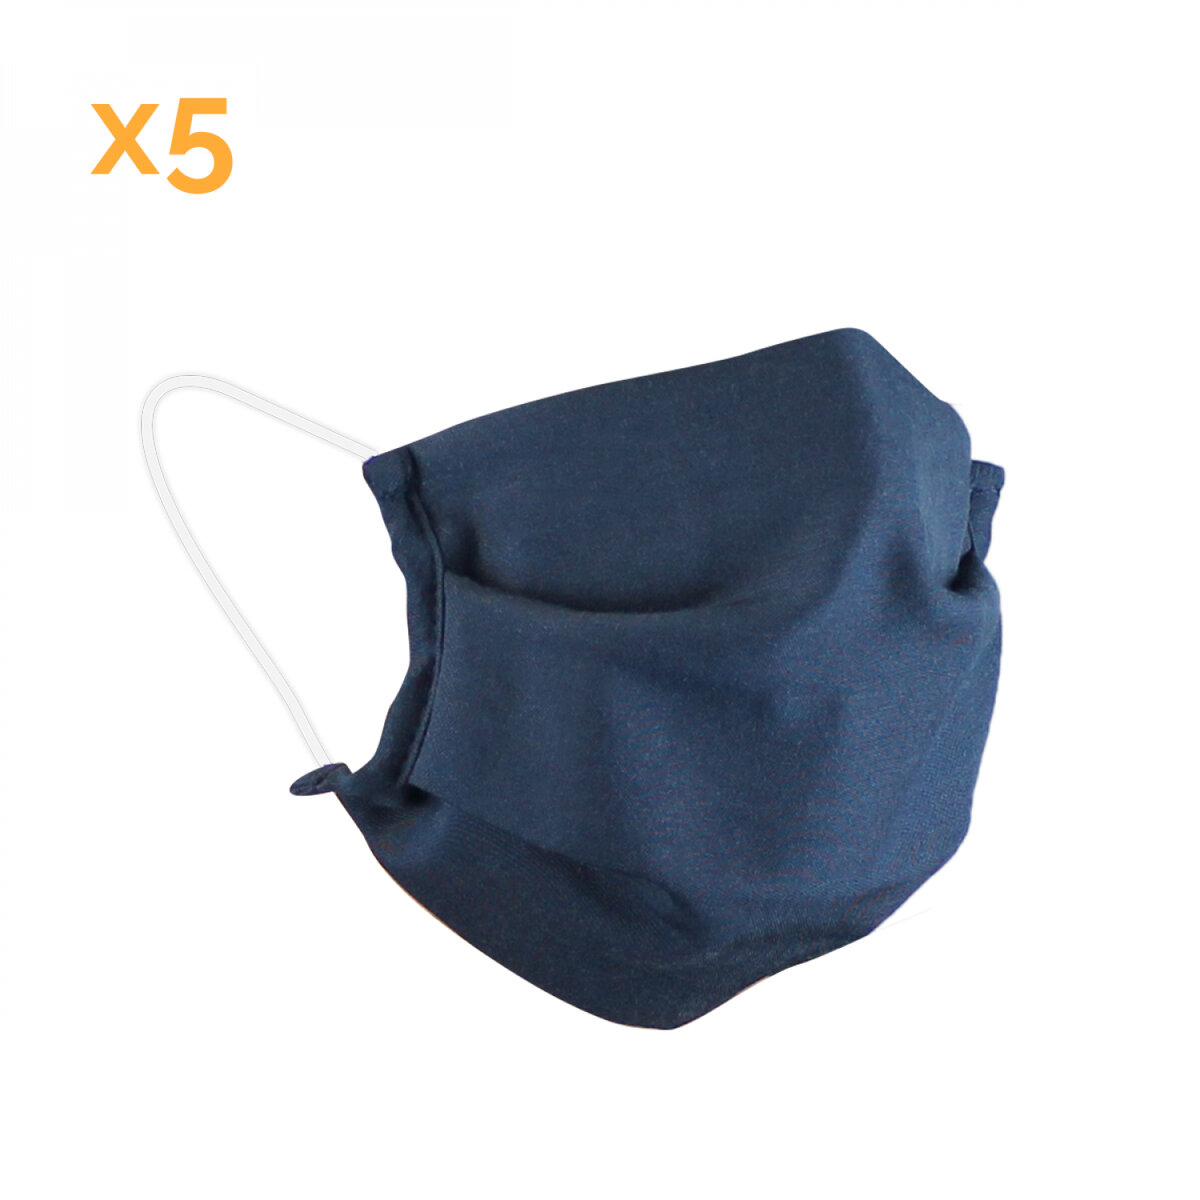 Lot de 2 masques de protection visage lavable 50 fois pour enfant - 3  couches en tissu - Bleu marine - Certifié UNS1 - La Poste